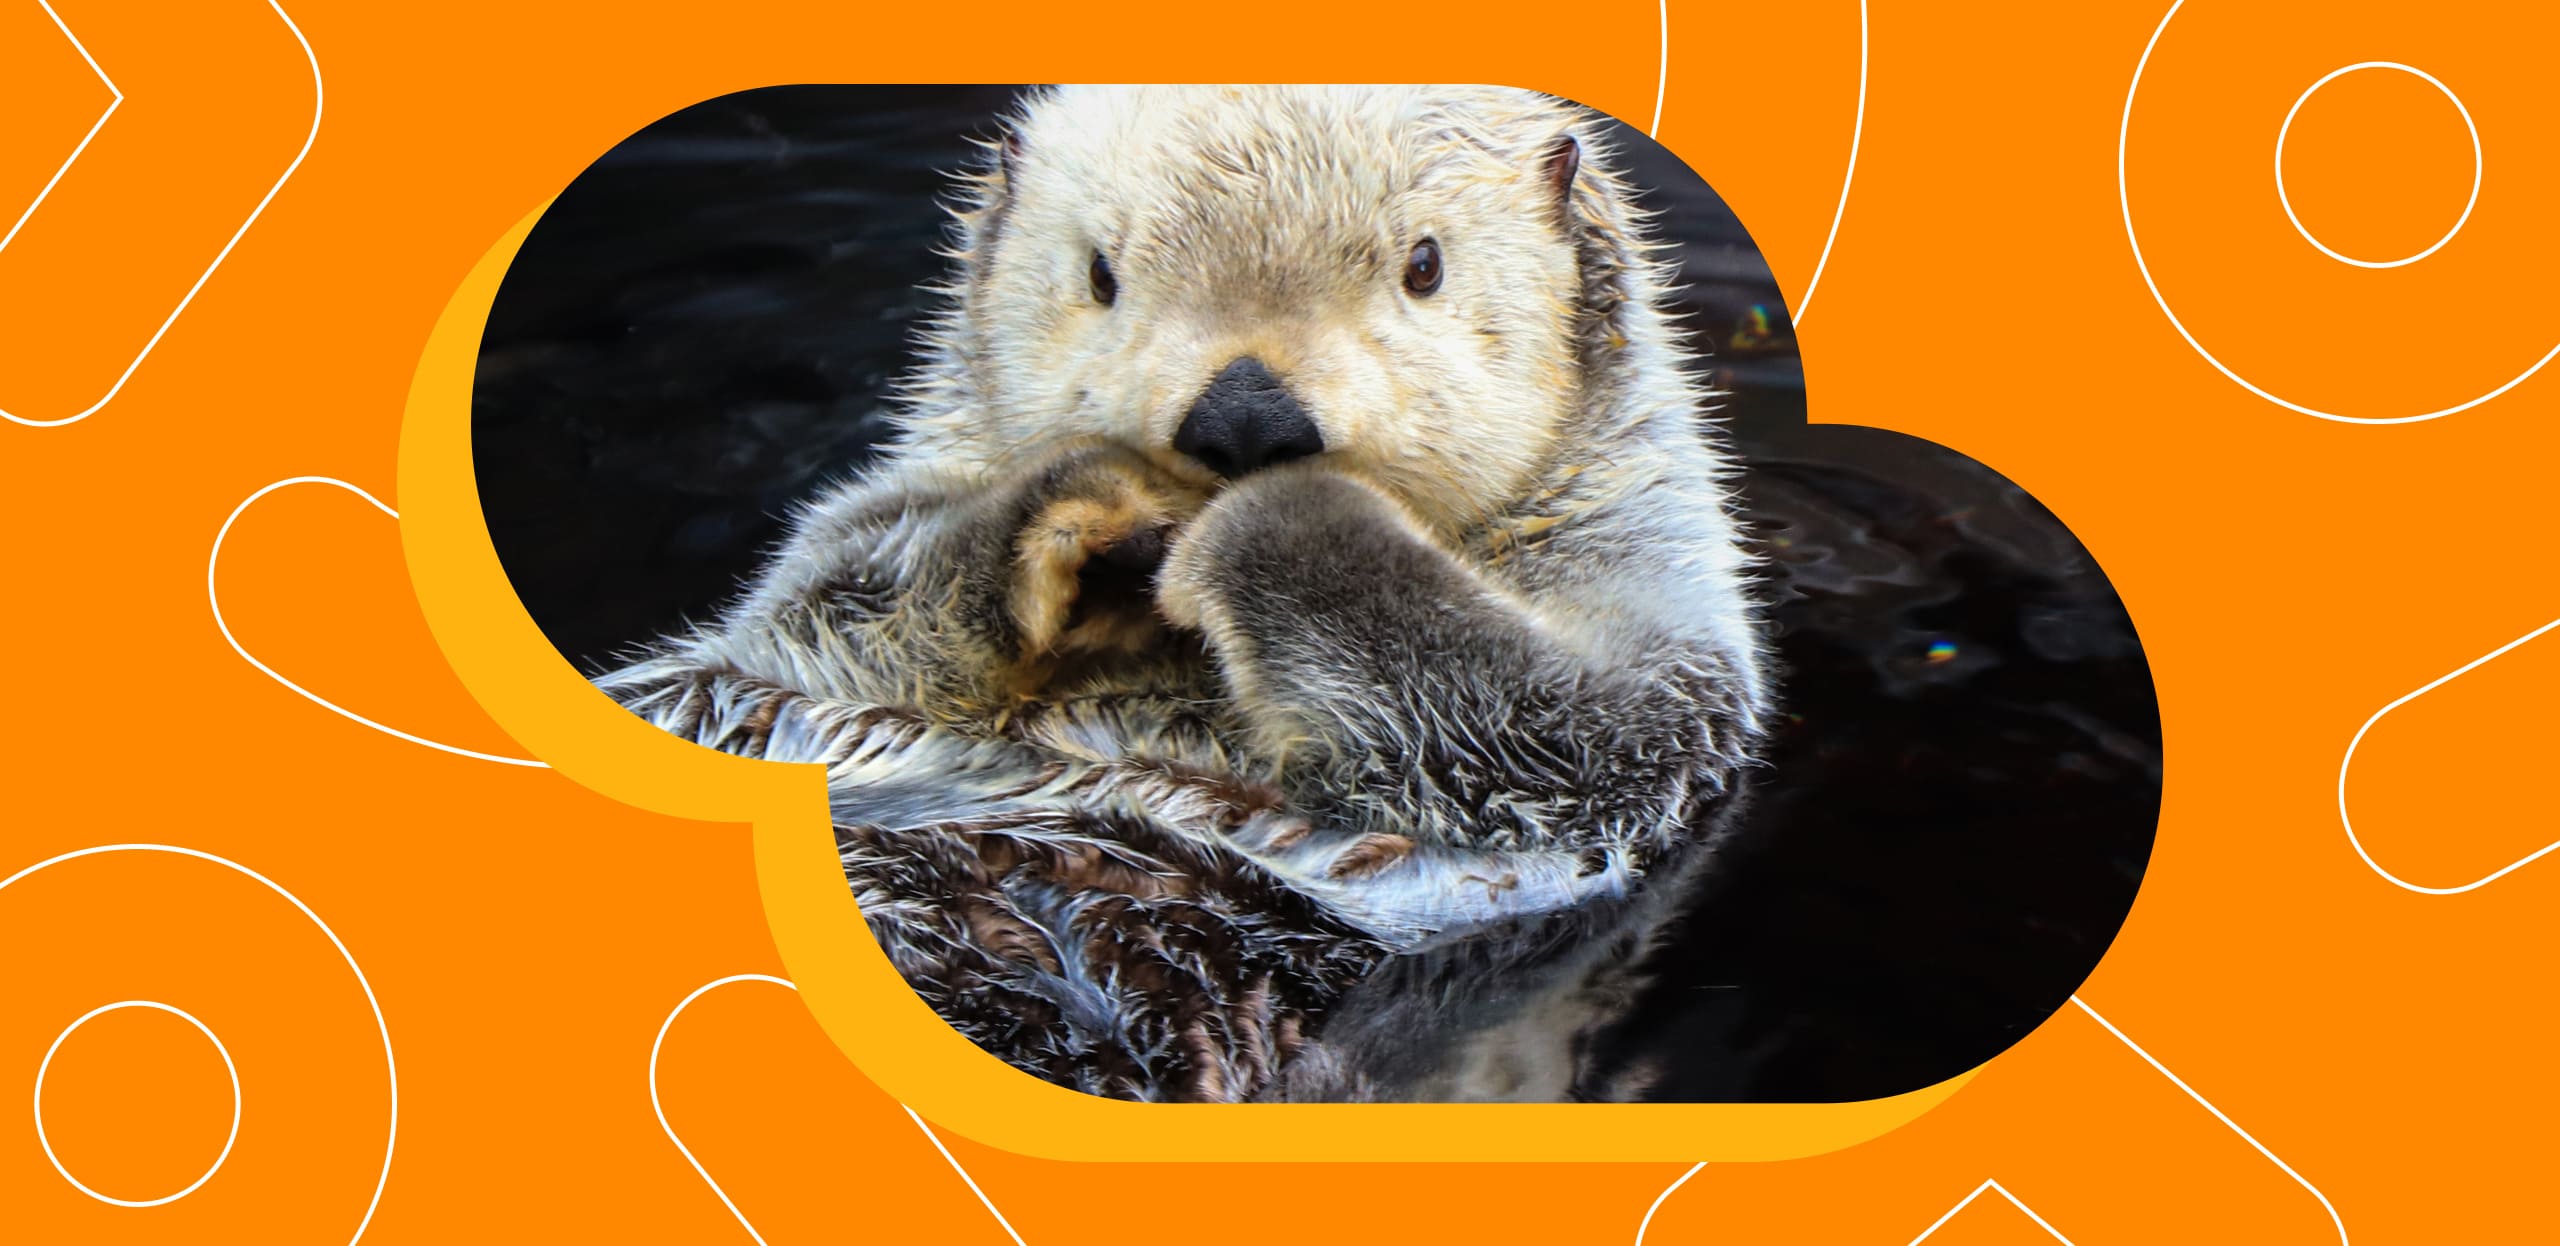 ОК и Всемирный фонд дикой природы представили квиз, новогодние стикеры и рамки на аватар с каланом